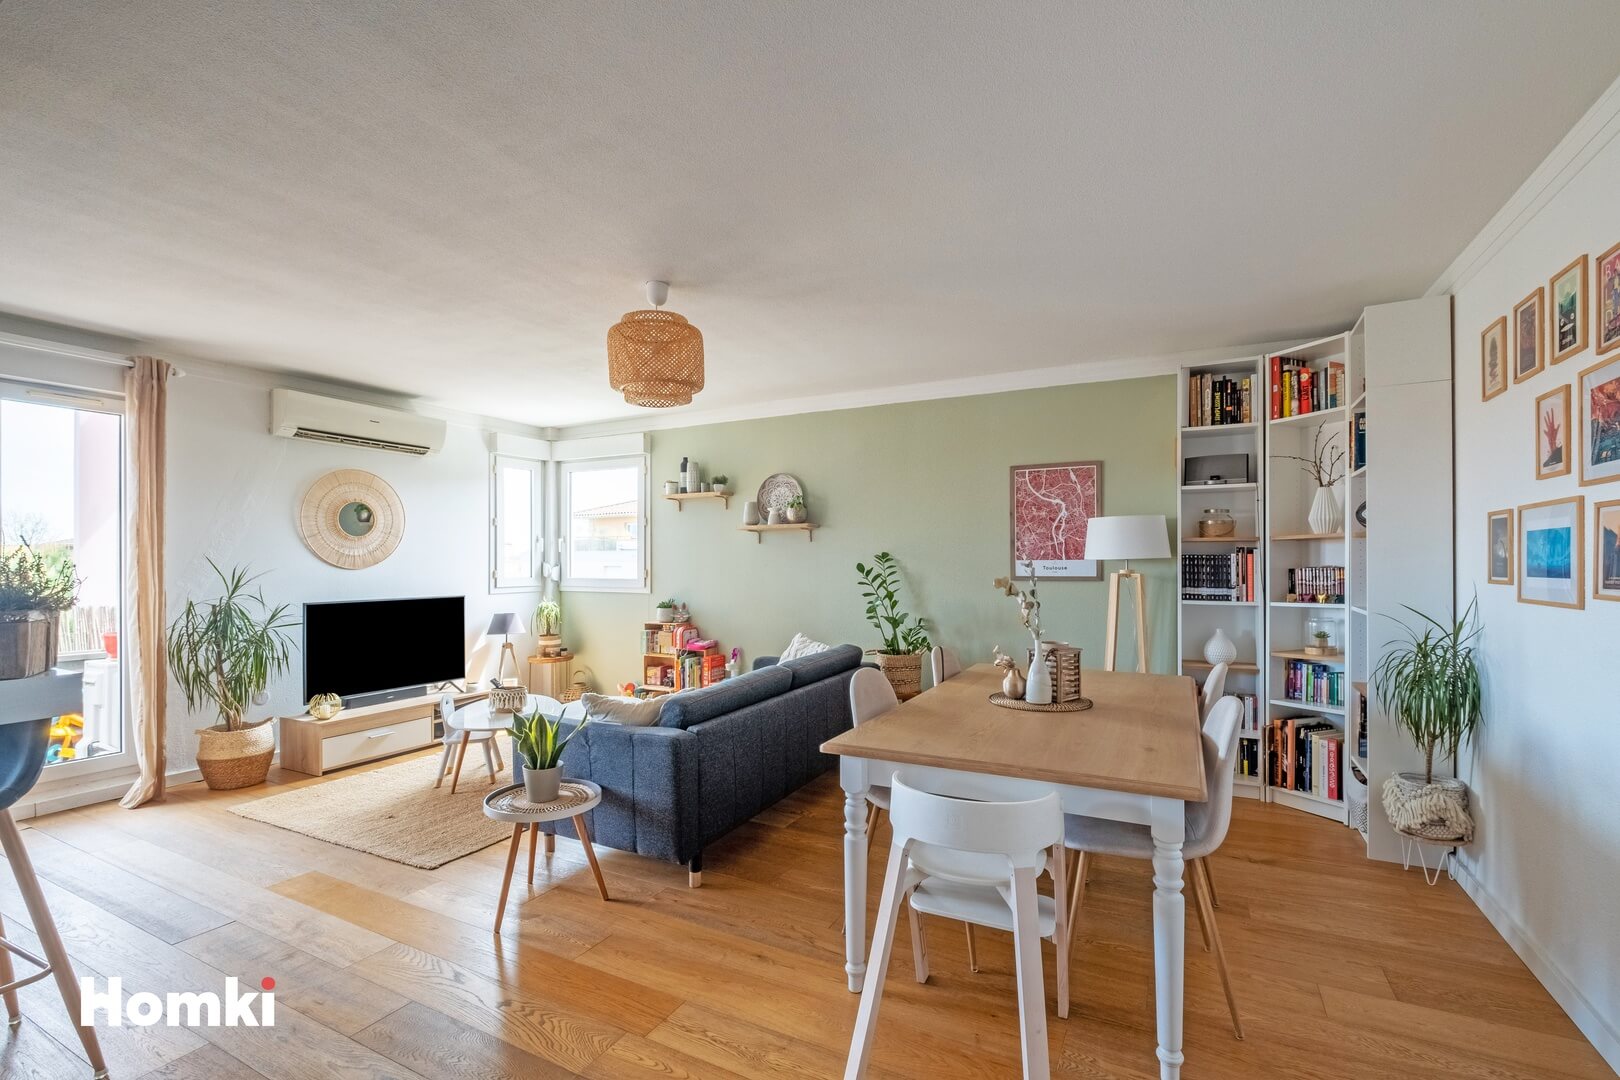 Homki - Vente Appartement  de 73.0 m² à Toulouse 31500